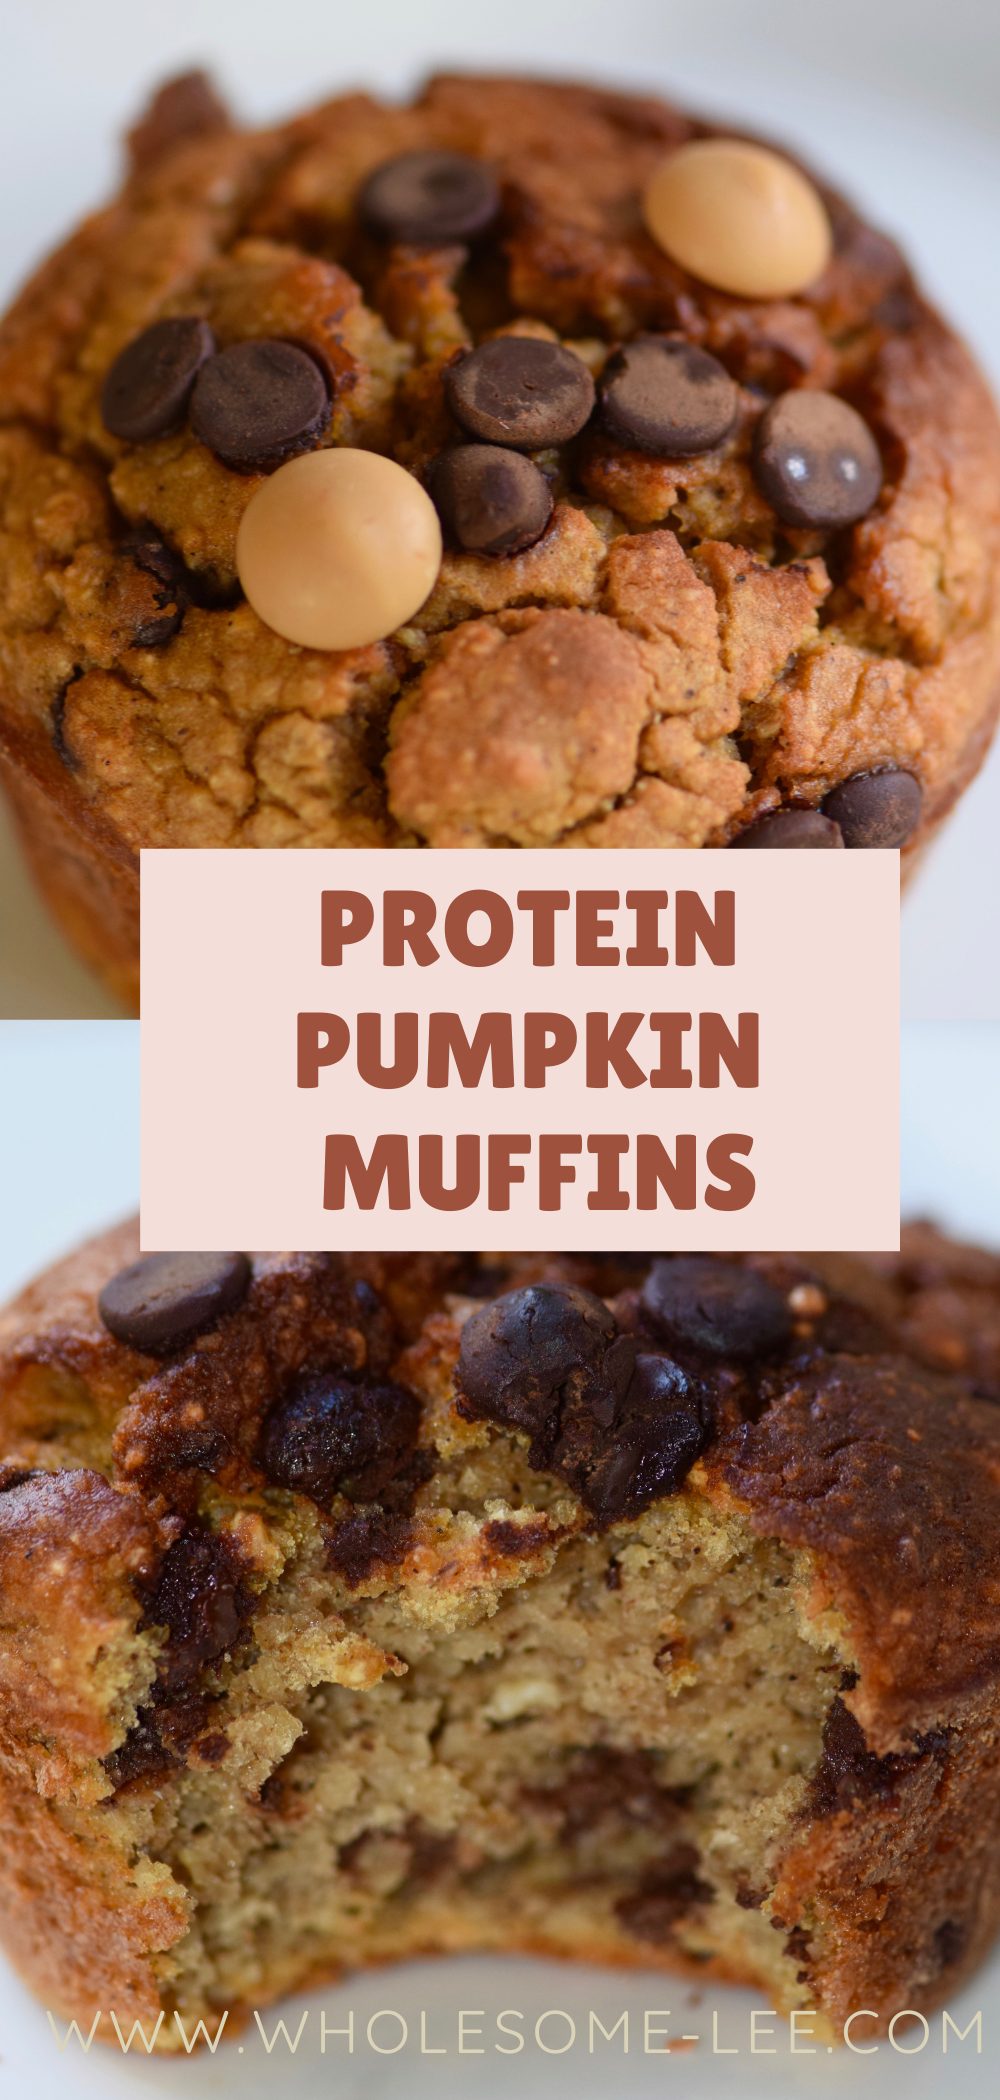 Protein Pumpkin muffins